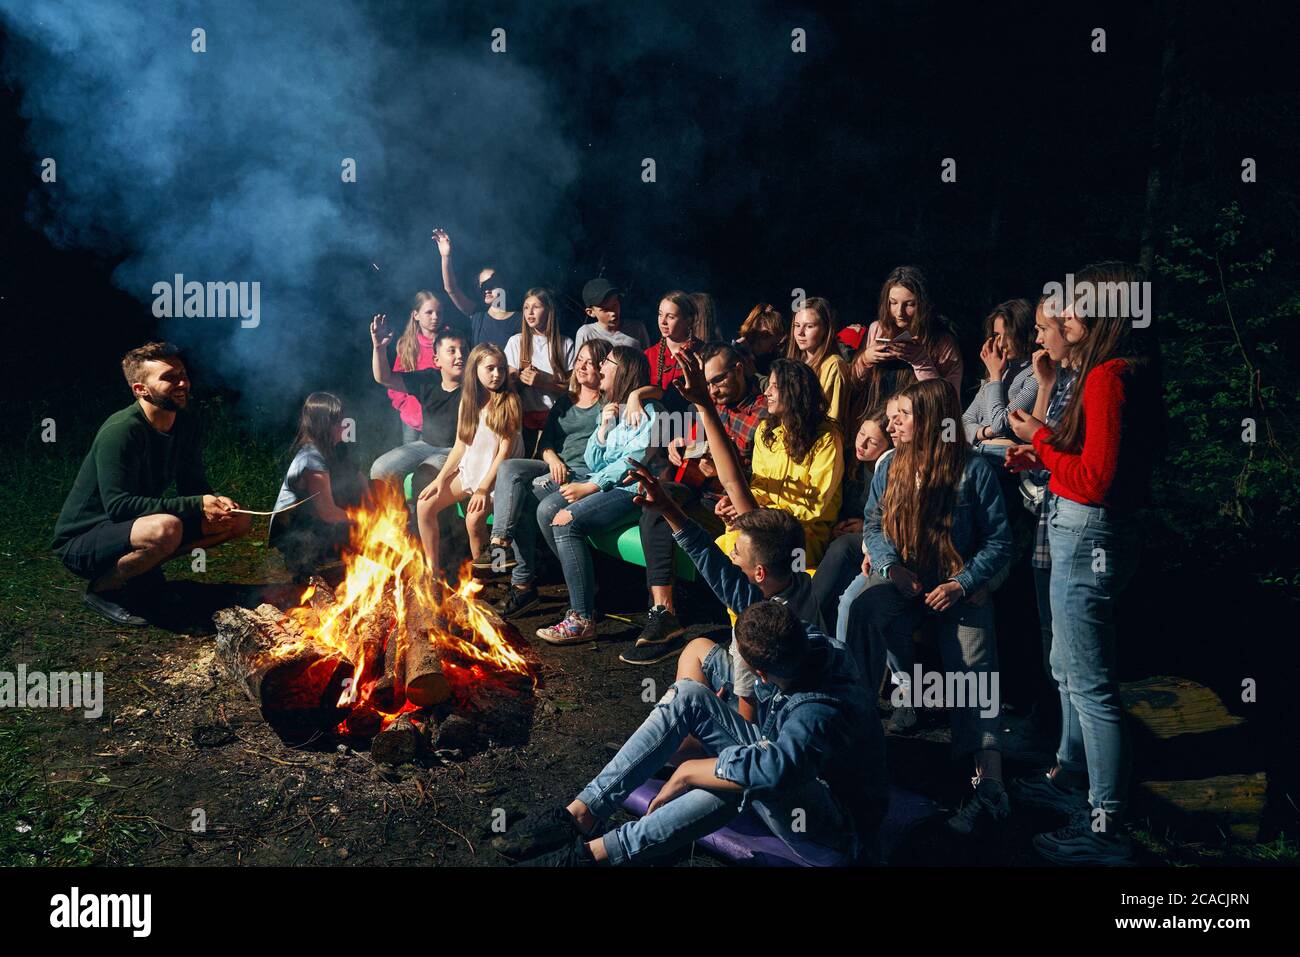 Vue latérale des enfants heureux assis sur un banc en bois et chantant près du feu de camp dans la chaude nuit d'été. Les Scoutmasters jouent de la guitare et s'amusent avec les enfants en forêt. Concept de camping d'été. Banque D'Images